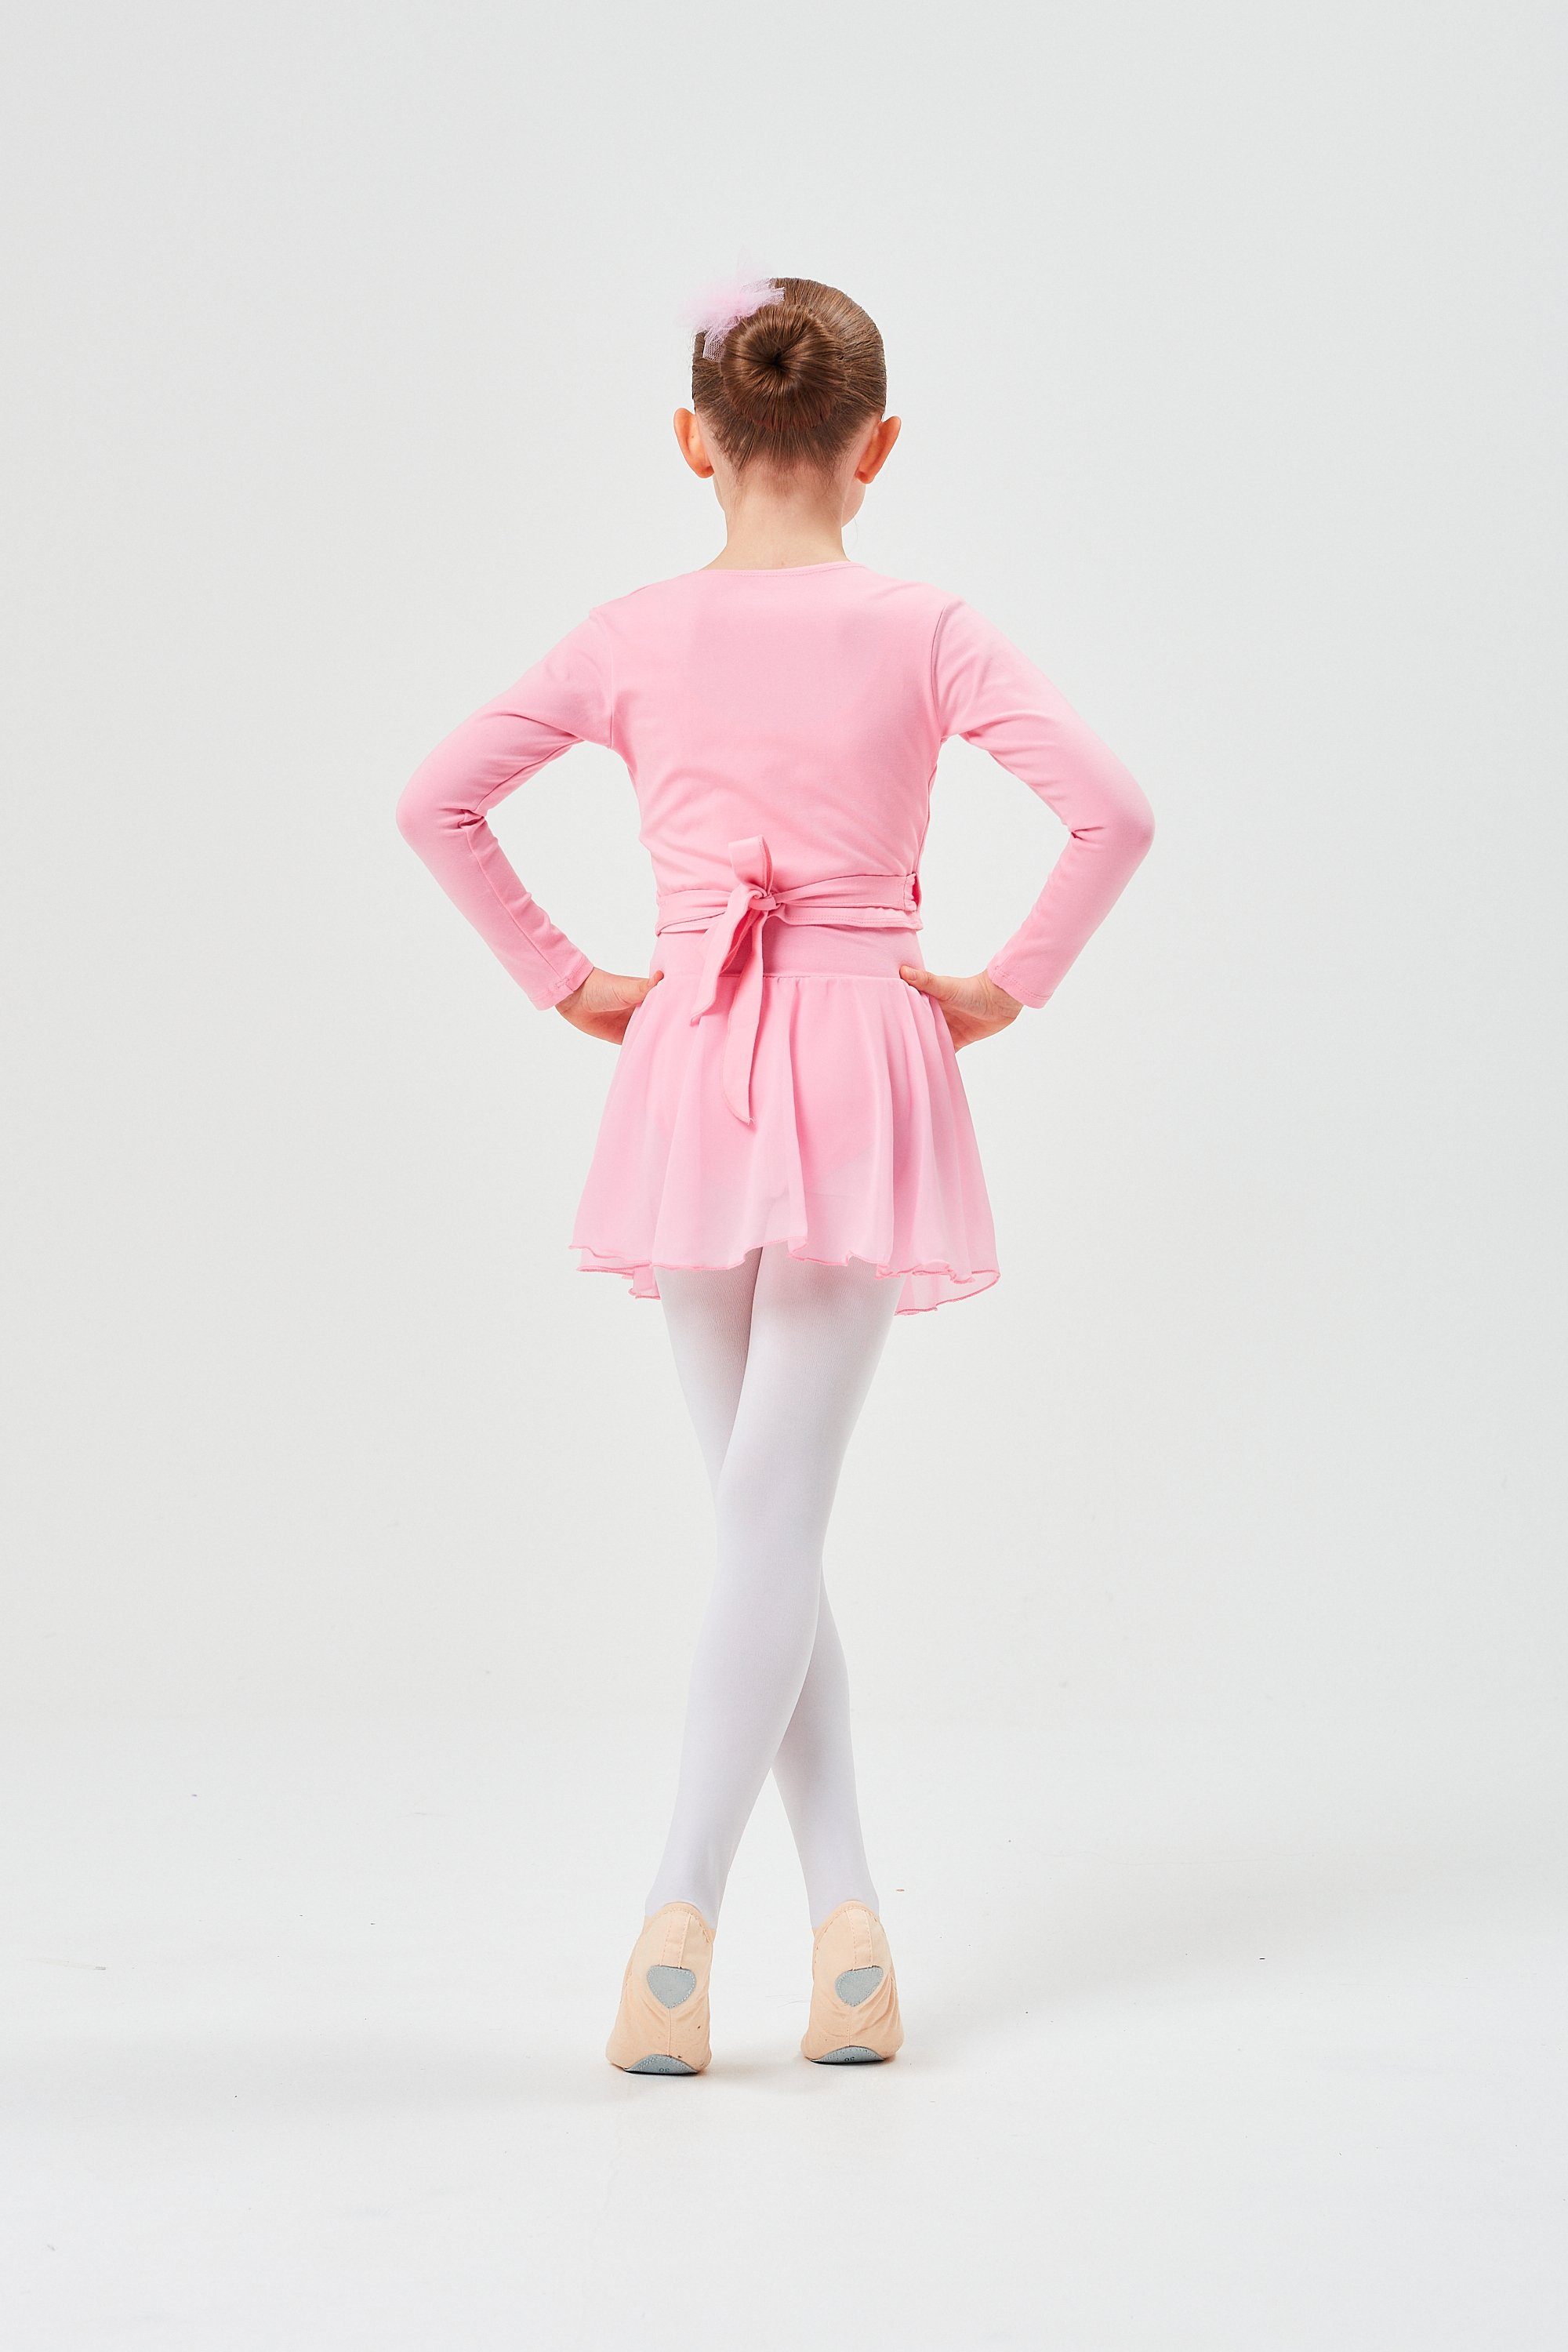 tanzmuster Sweatjacke Ballett Wickelacke Mandy Mädchen Ballettjacke Baumwolle für aus weicher rosa